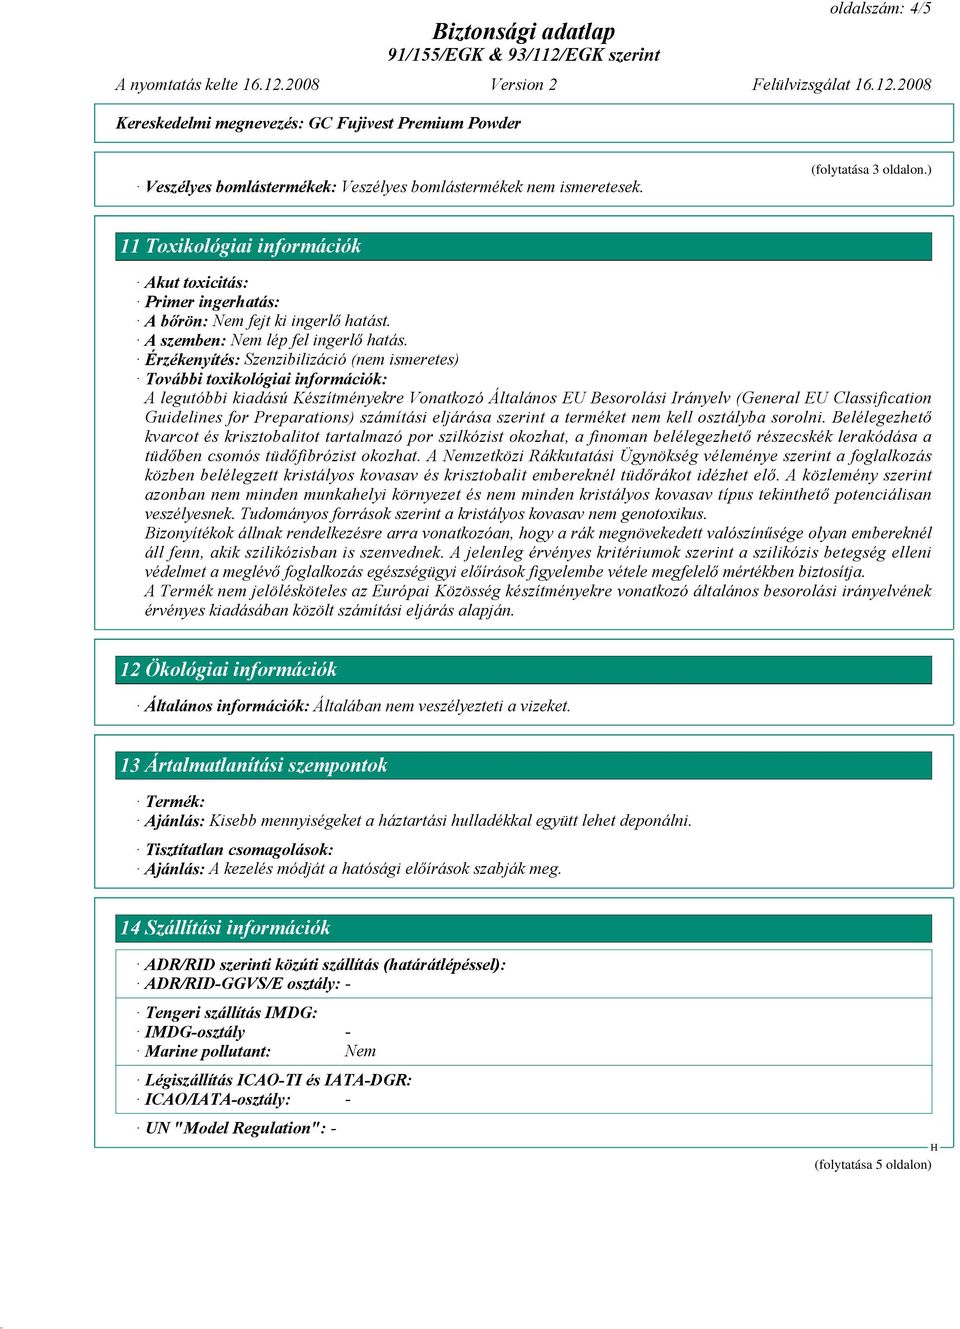 Érzékenyítés: Szenzibilizáció (nem ismeretes) További toxikológiai információk: A legutóbbi kiadású Készítményekre Vonatkozó Általános EU Besorolási Irányelv (General EU Classification Guidelines for